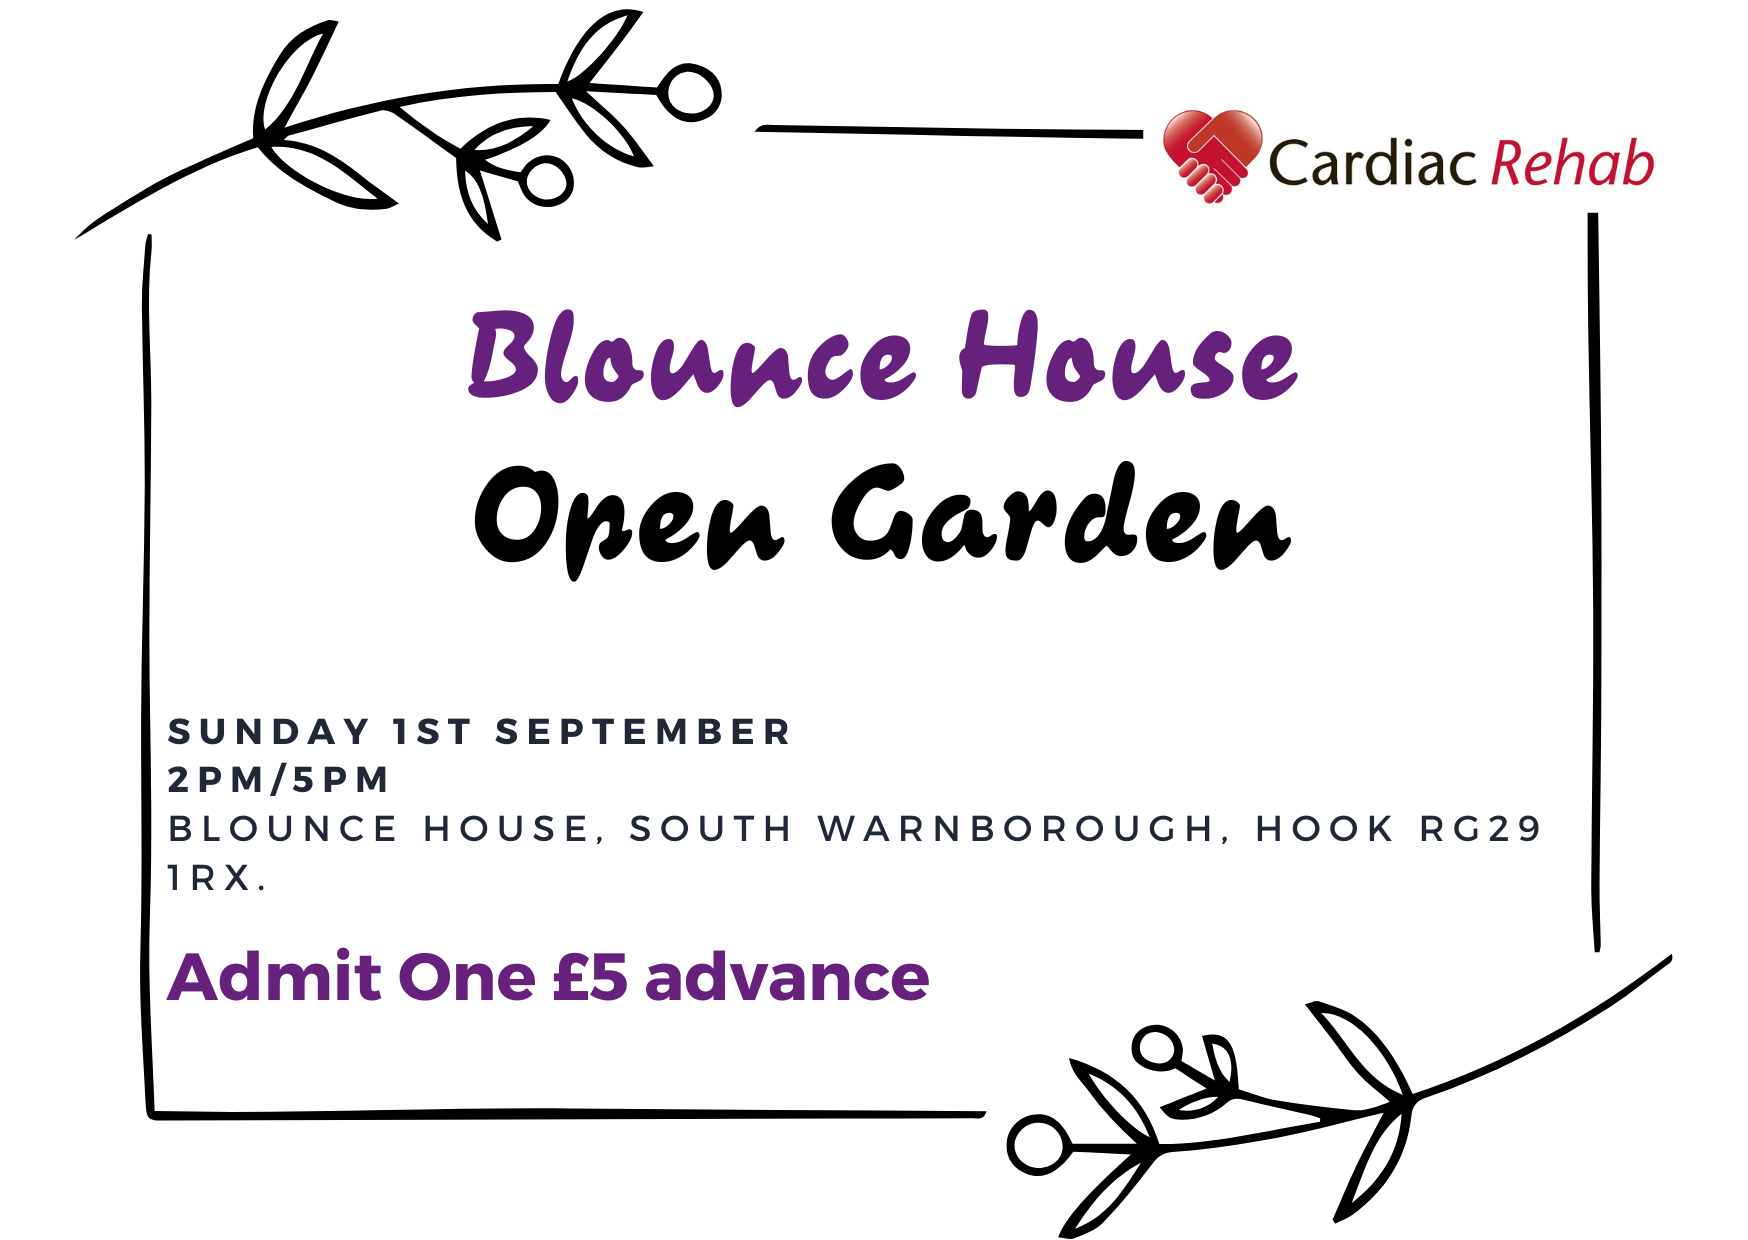 An image of Open Garden – Blounce House